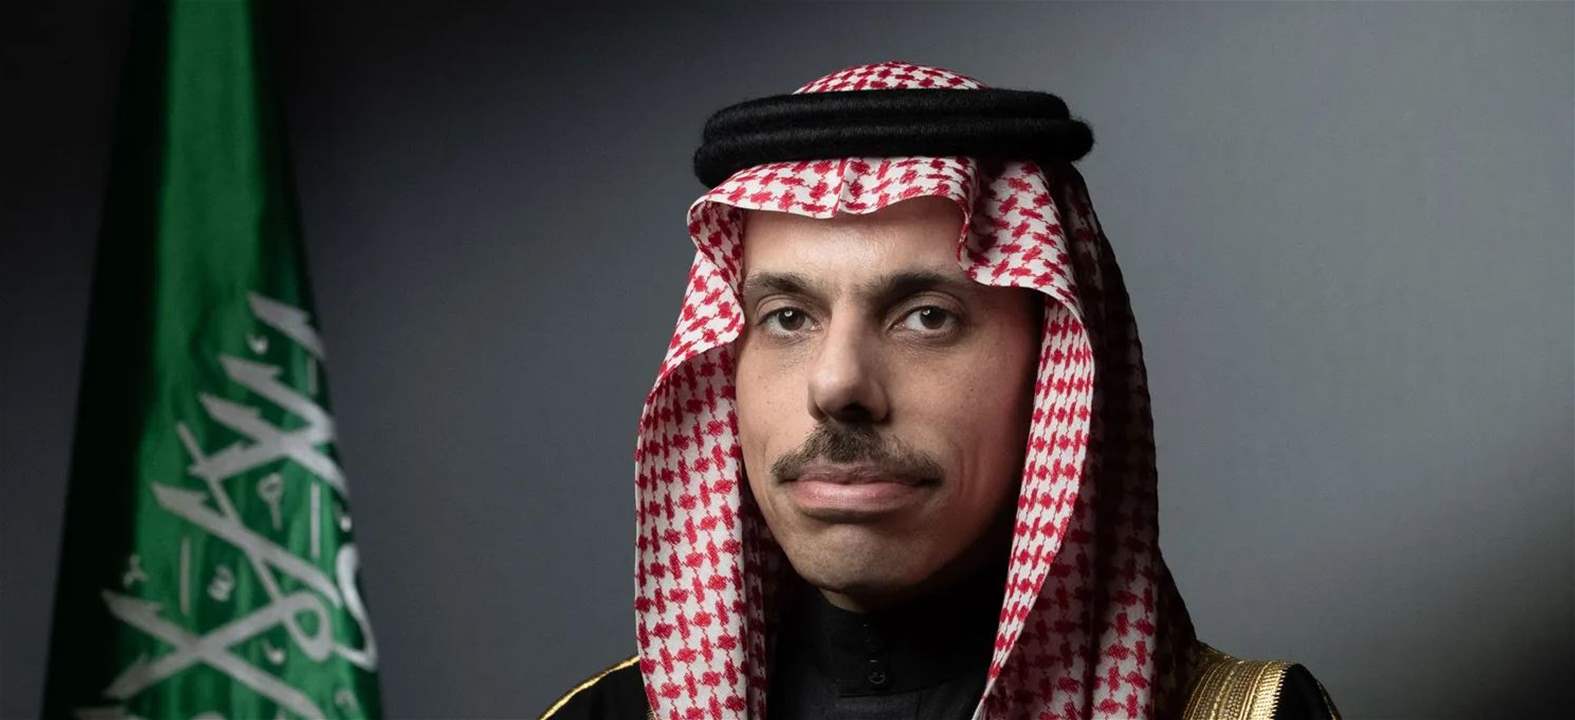   الخارجية السعودية: قلقون بشأن الأمن الإقليمي.. والأولوية للتهدئة وتقليل التصعيد